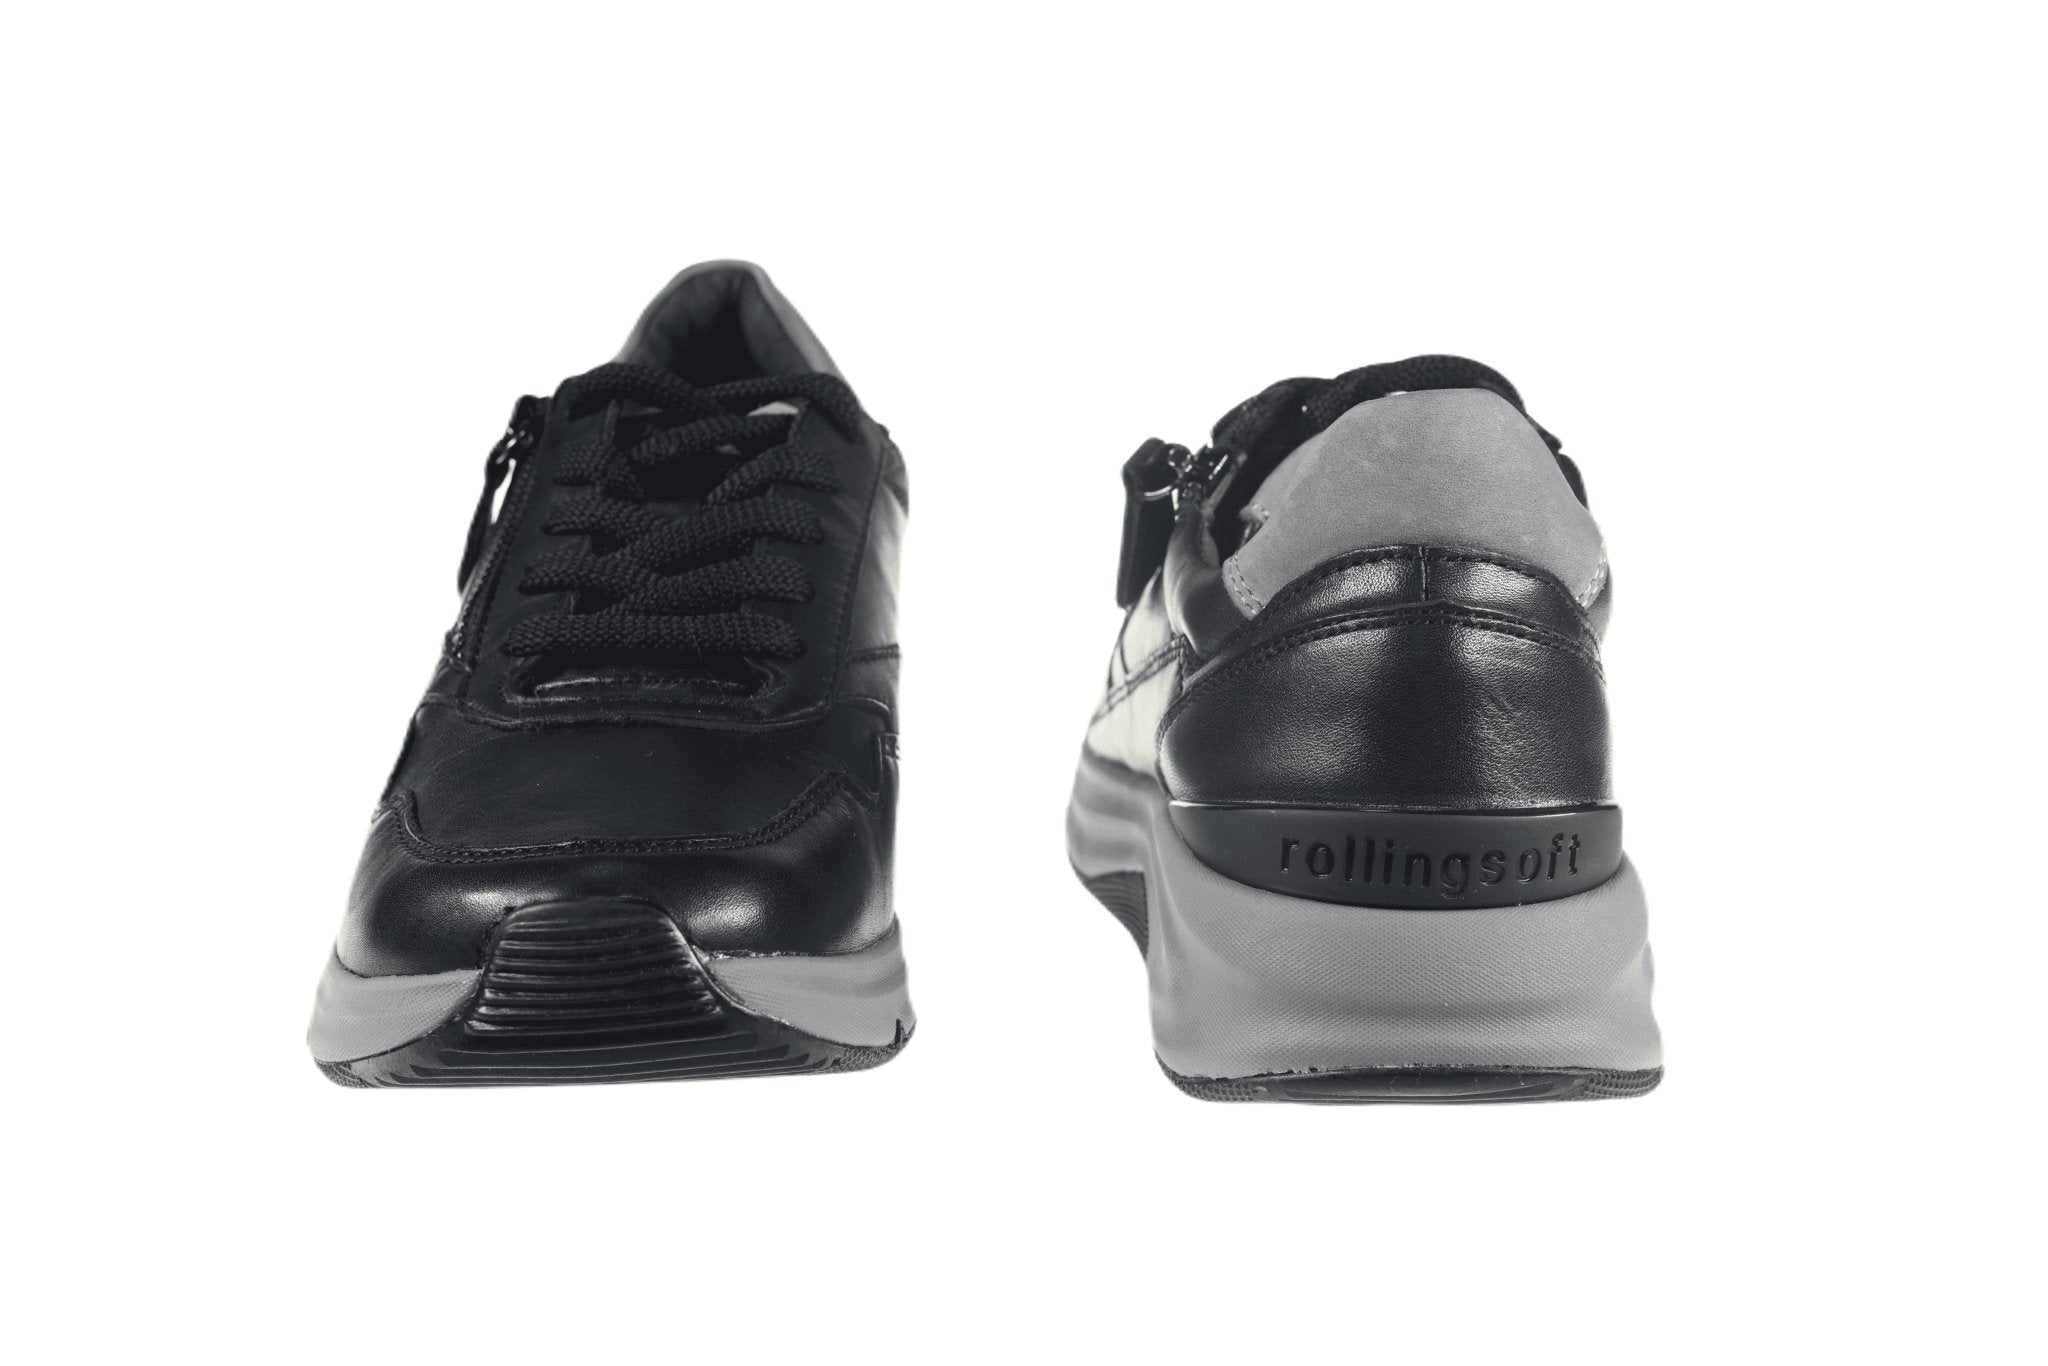 '76.898.57' women's walking shoes - Black - Chaplinshoes'76.898.57' women's walking shoes - BlackGabor